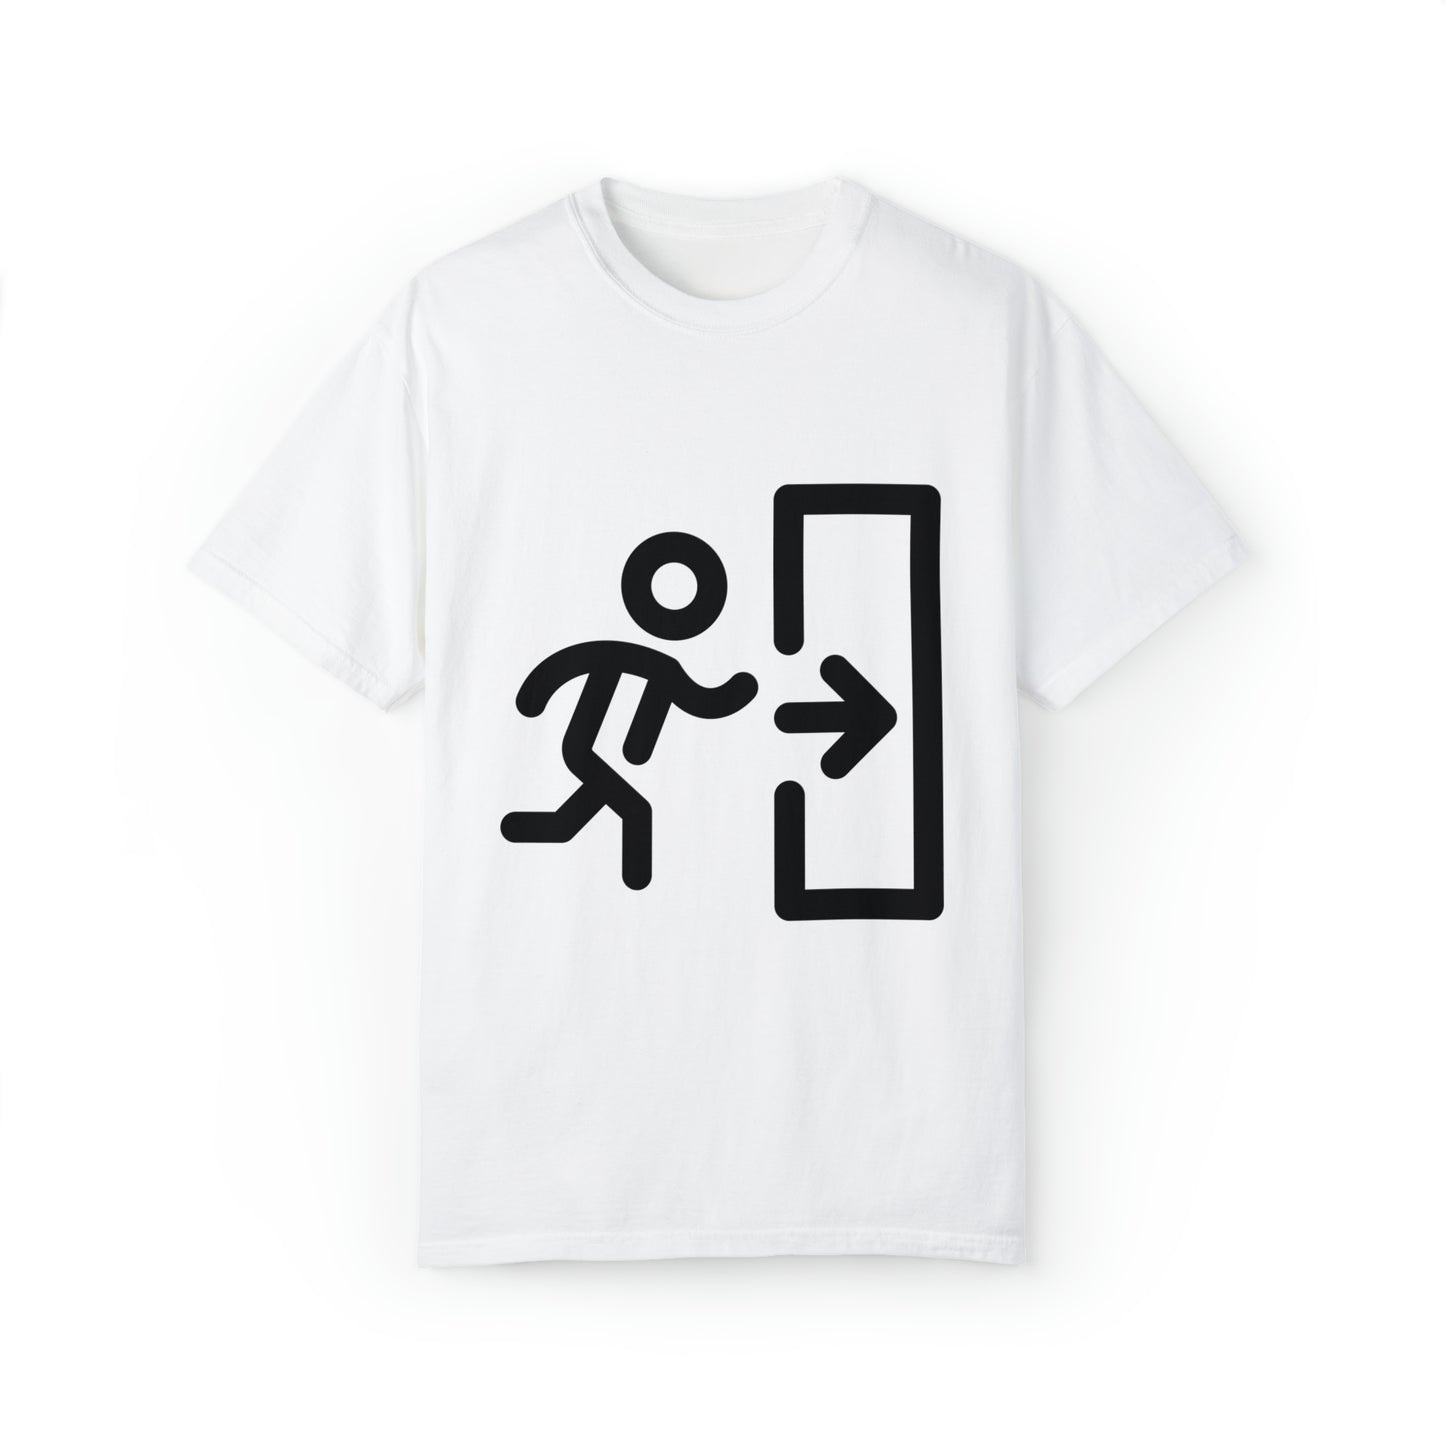 This way T-Shirt 